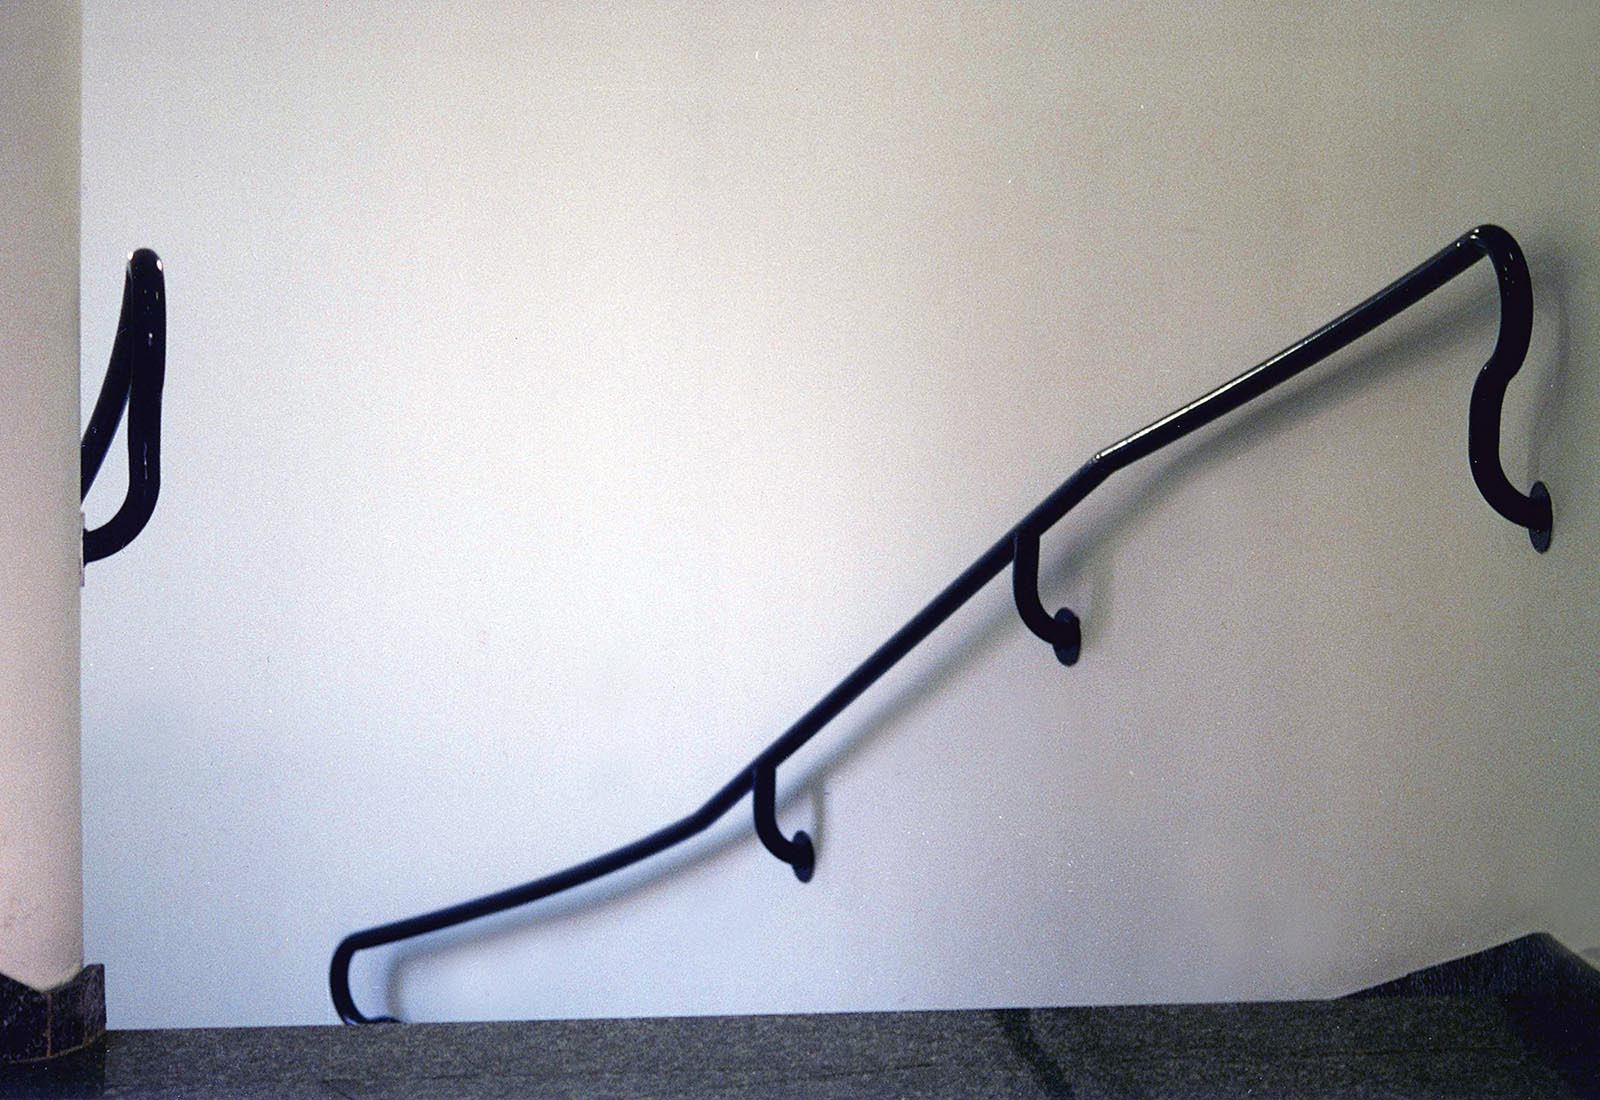 Building 25 Politecnico di Milano - The handrail of the main staircase